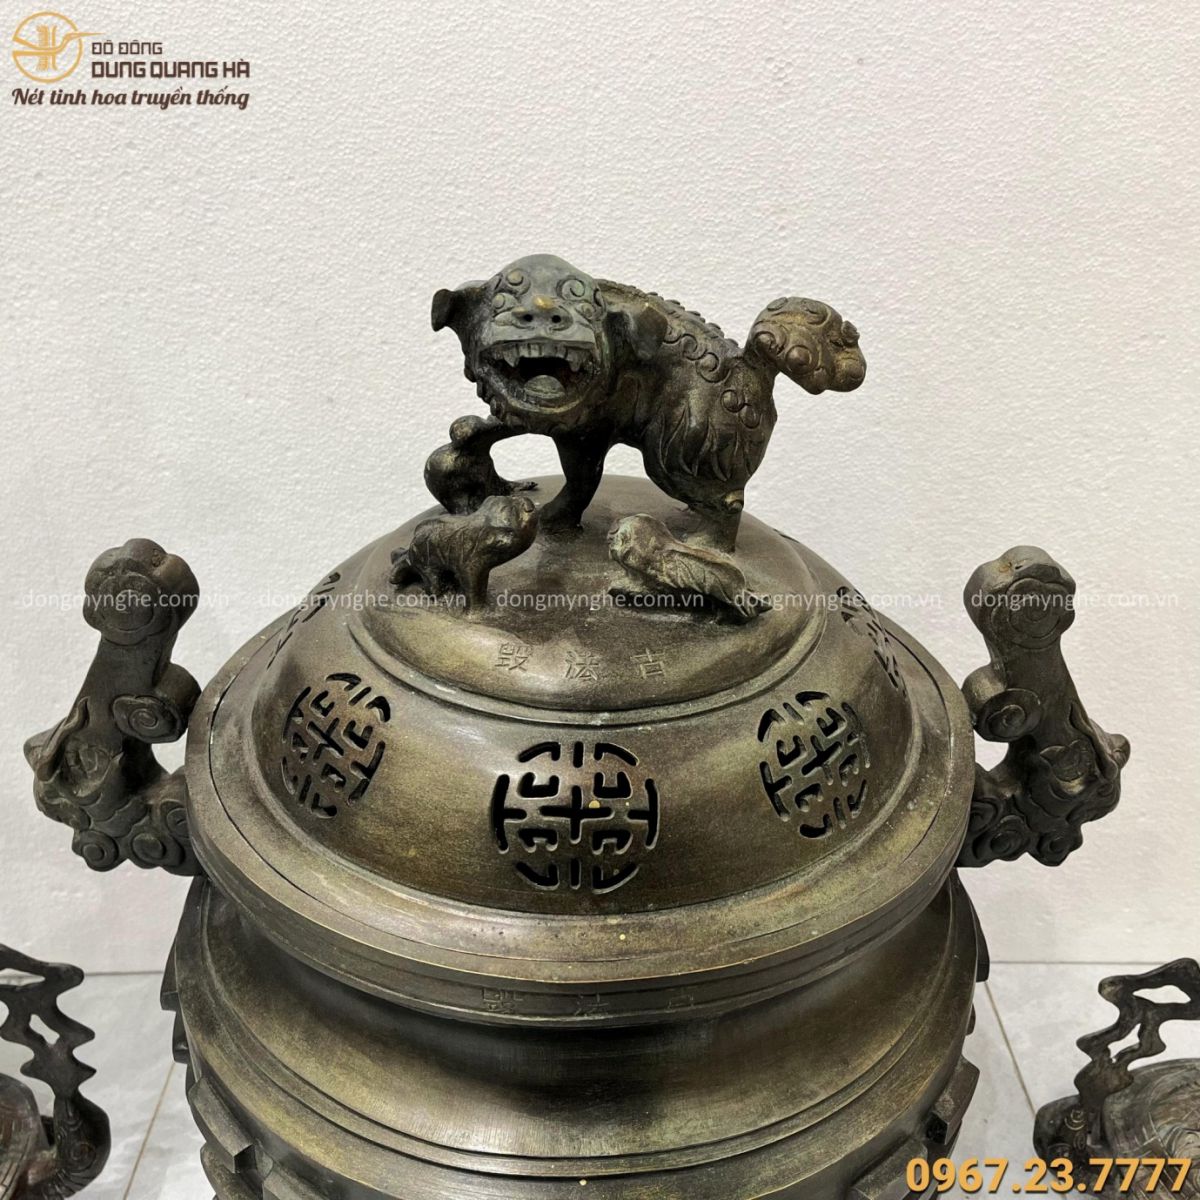 Bộ tam sự đỉnh hạc đồng hun đen giả cổ trưng bày bảo tàng Từ Sơn - Bắc Ninh